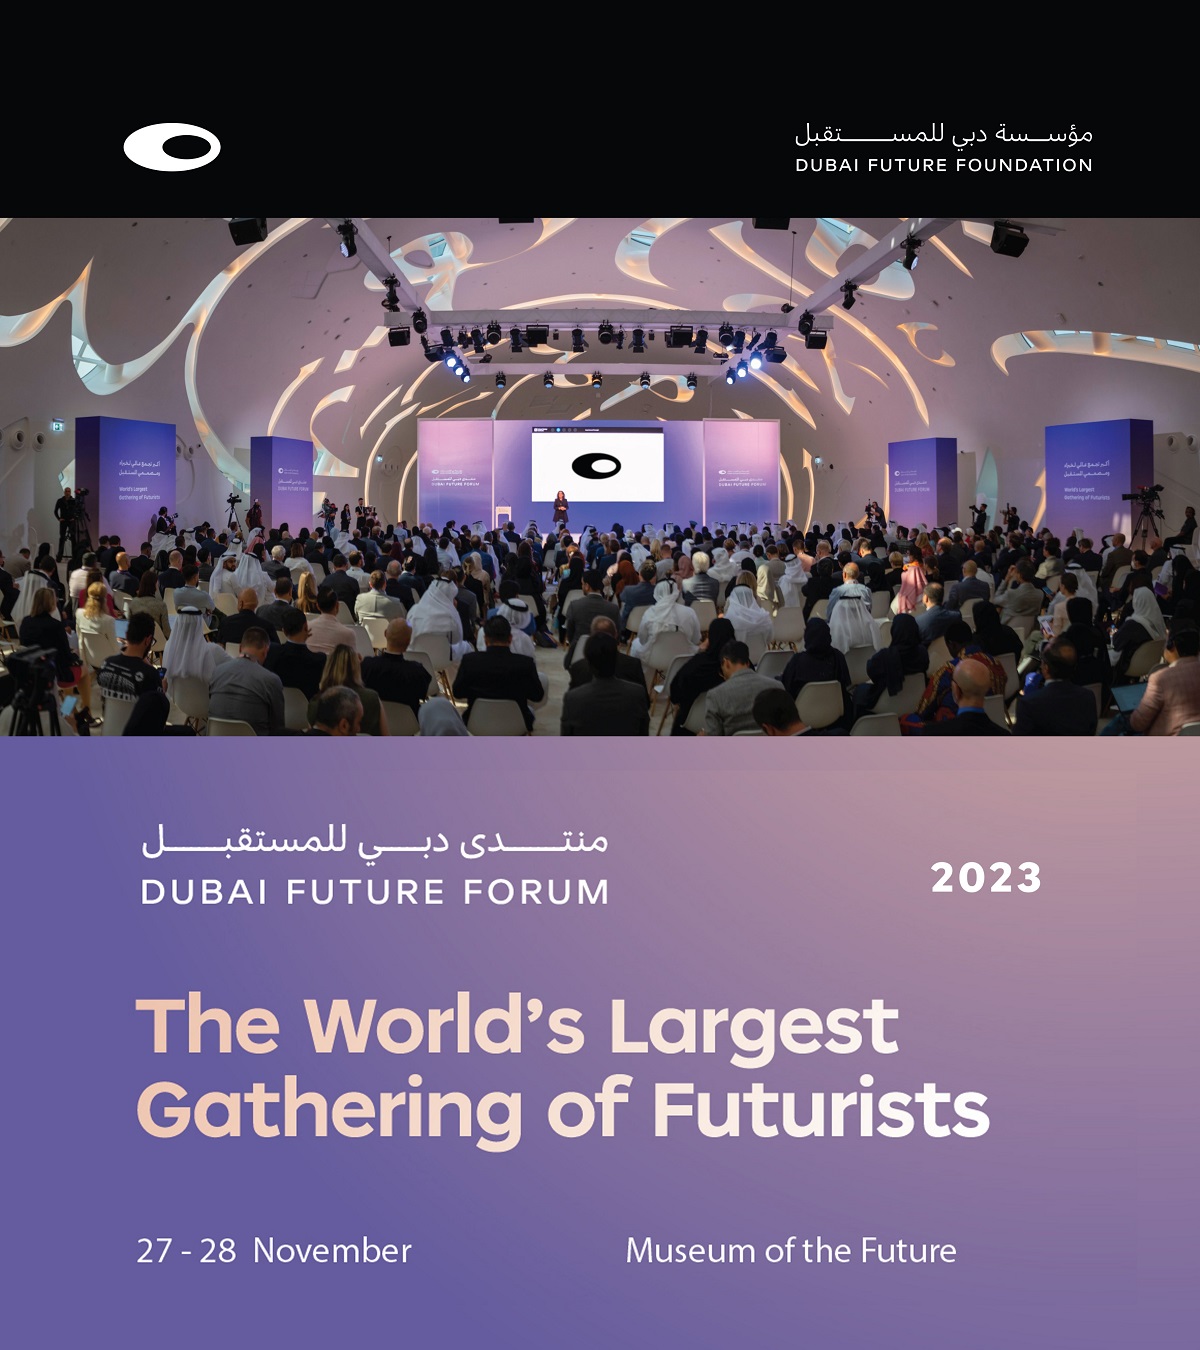 Dubai: World’s largest gathering of futurists on November 27-28